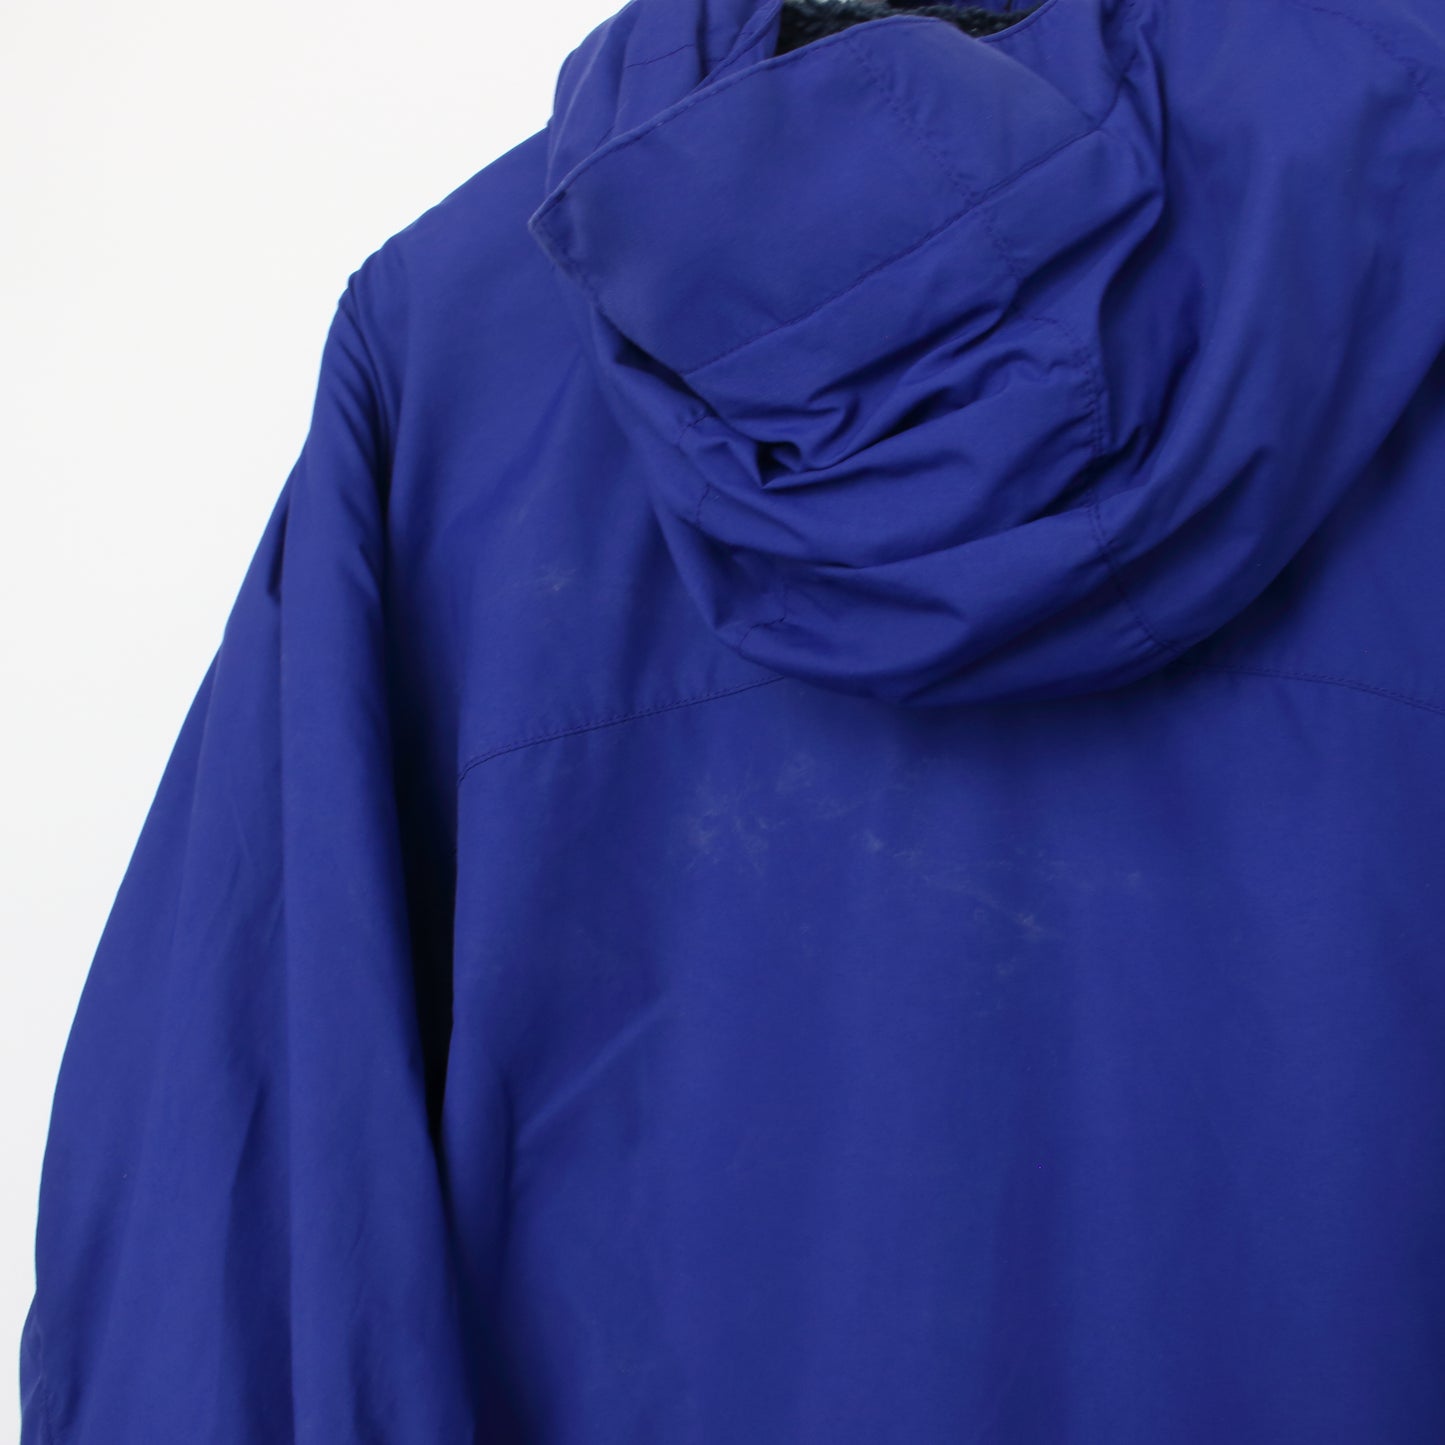 Vintage Patagonia full zip jacket in blue. Best fits L